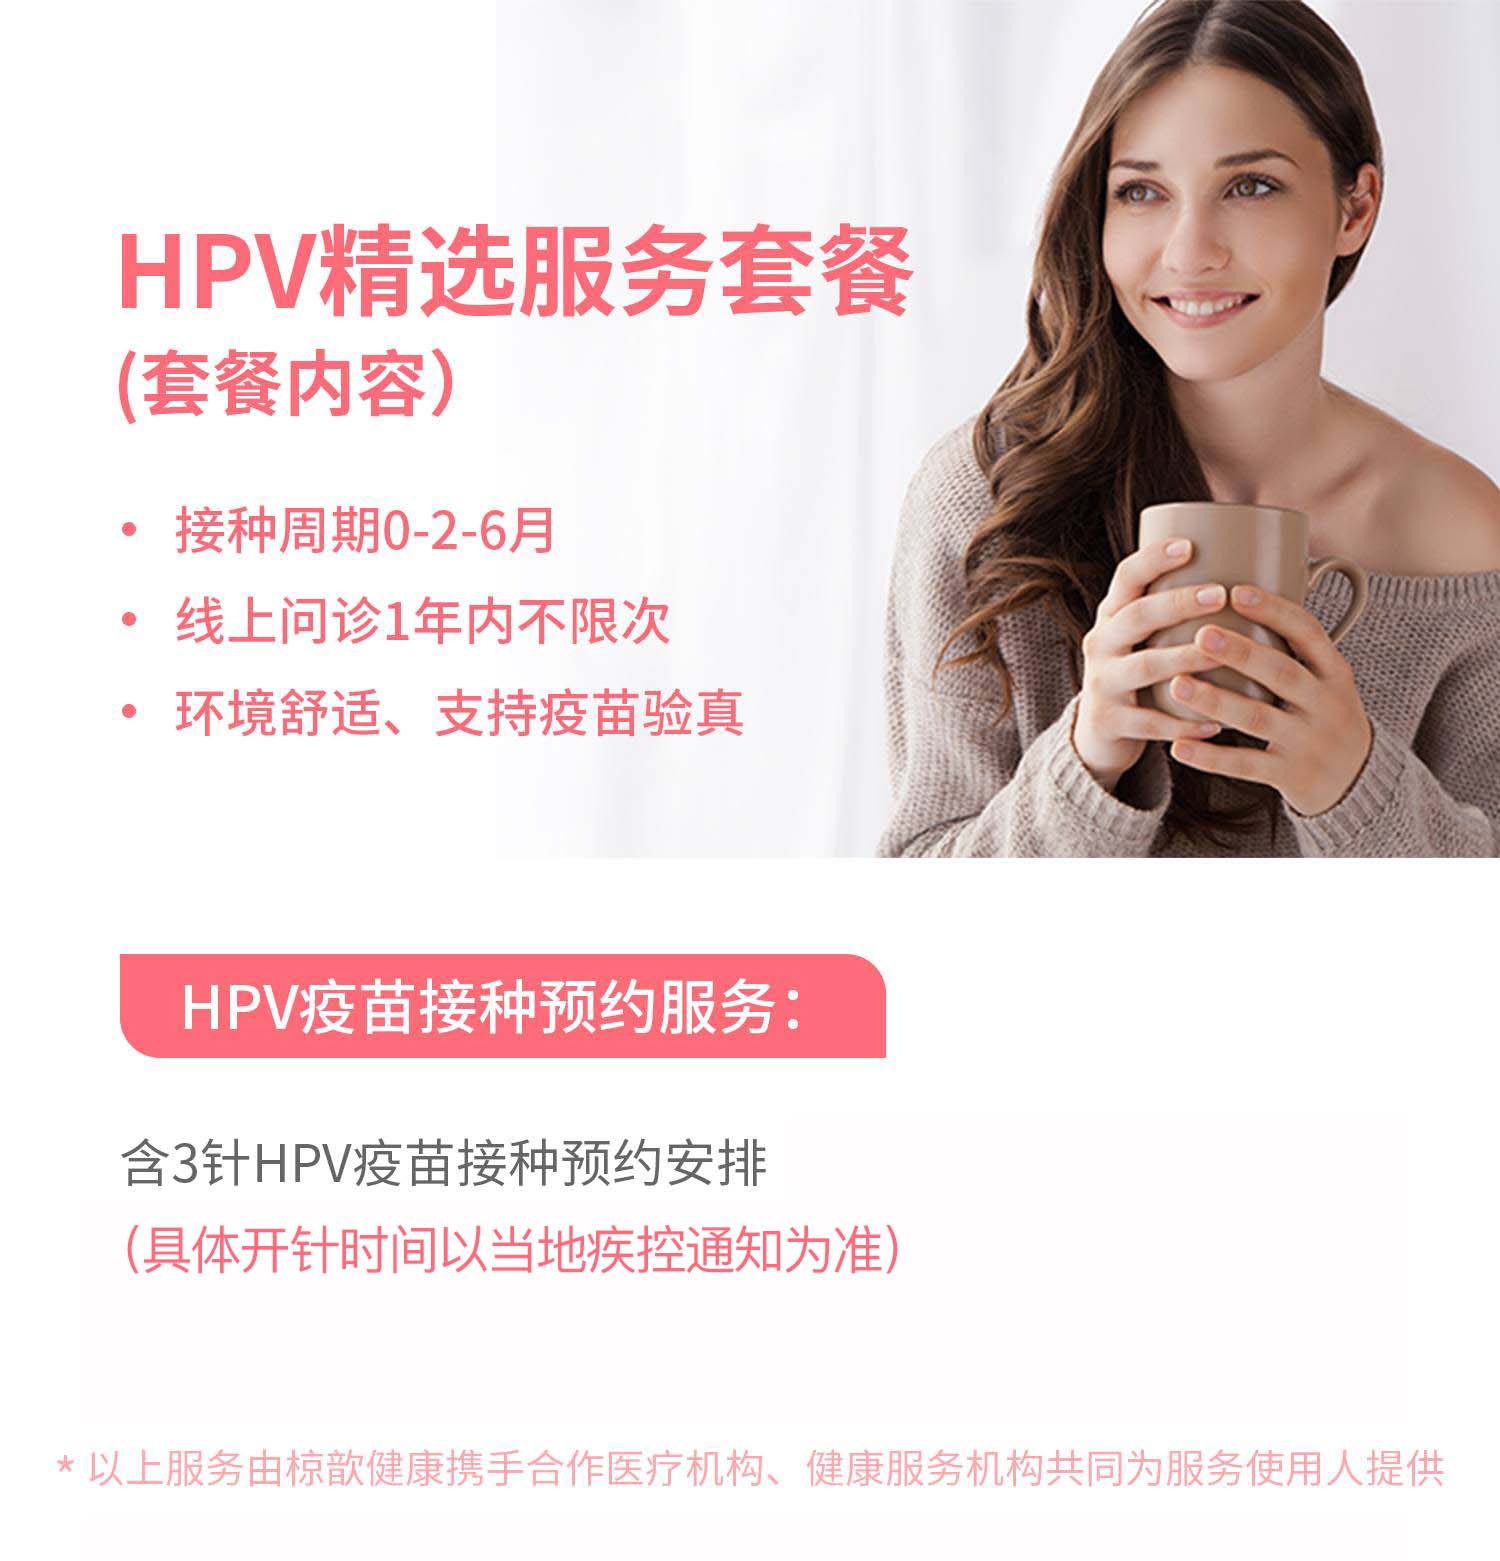 HPV九价疫苗预约服务（上海）